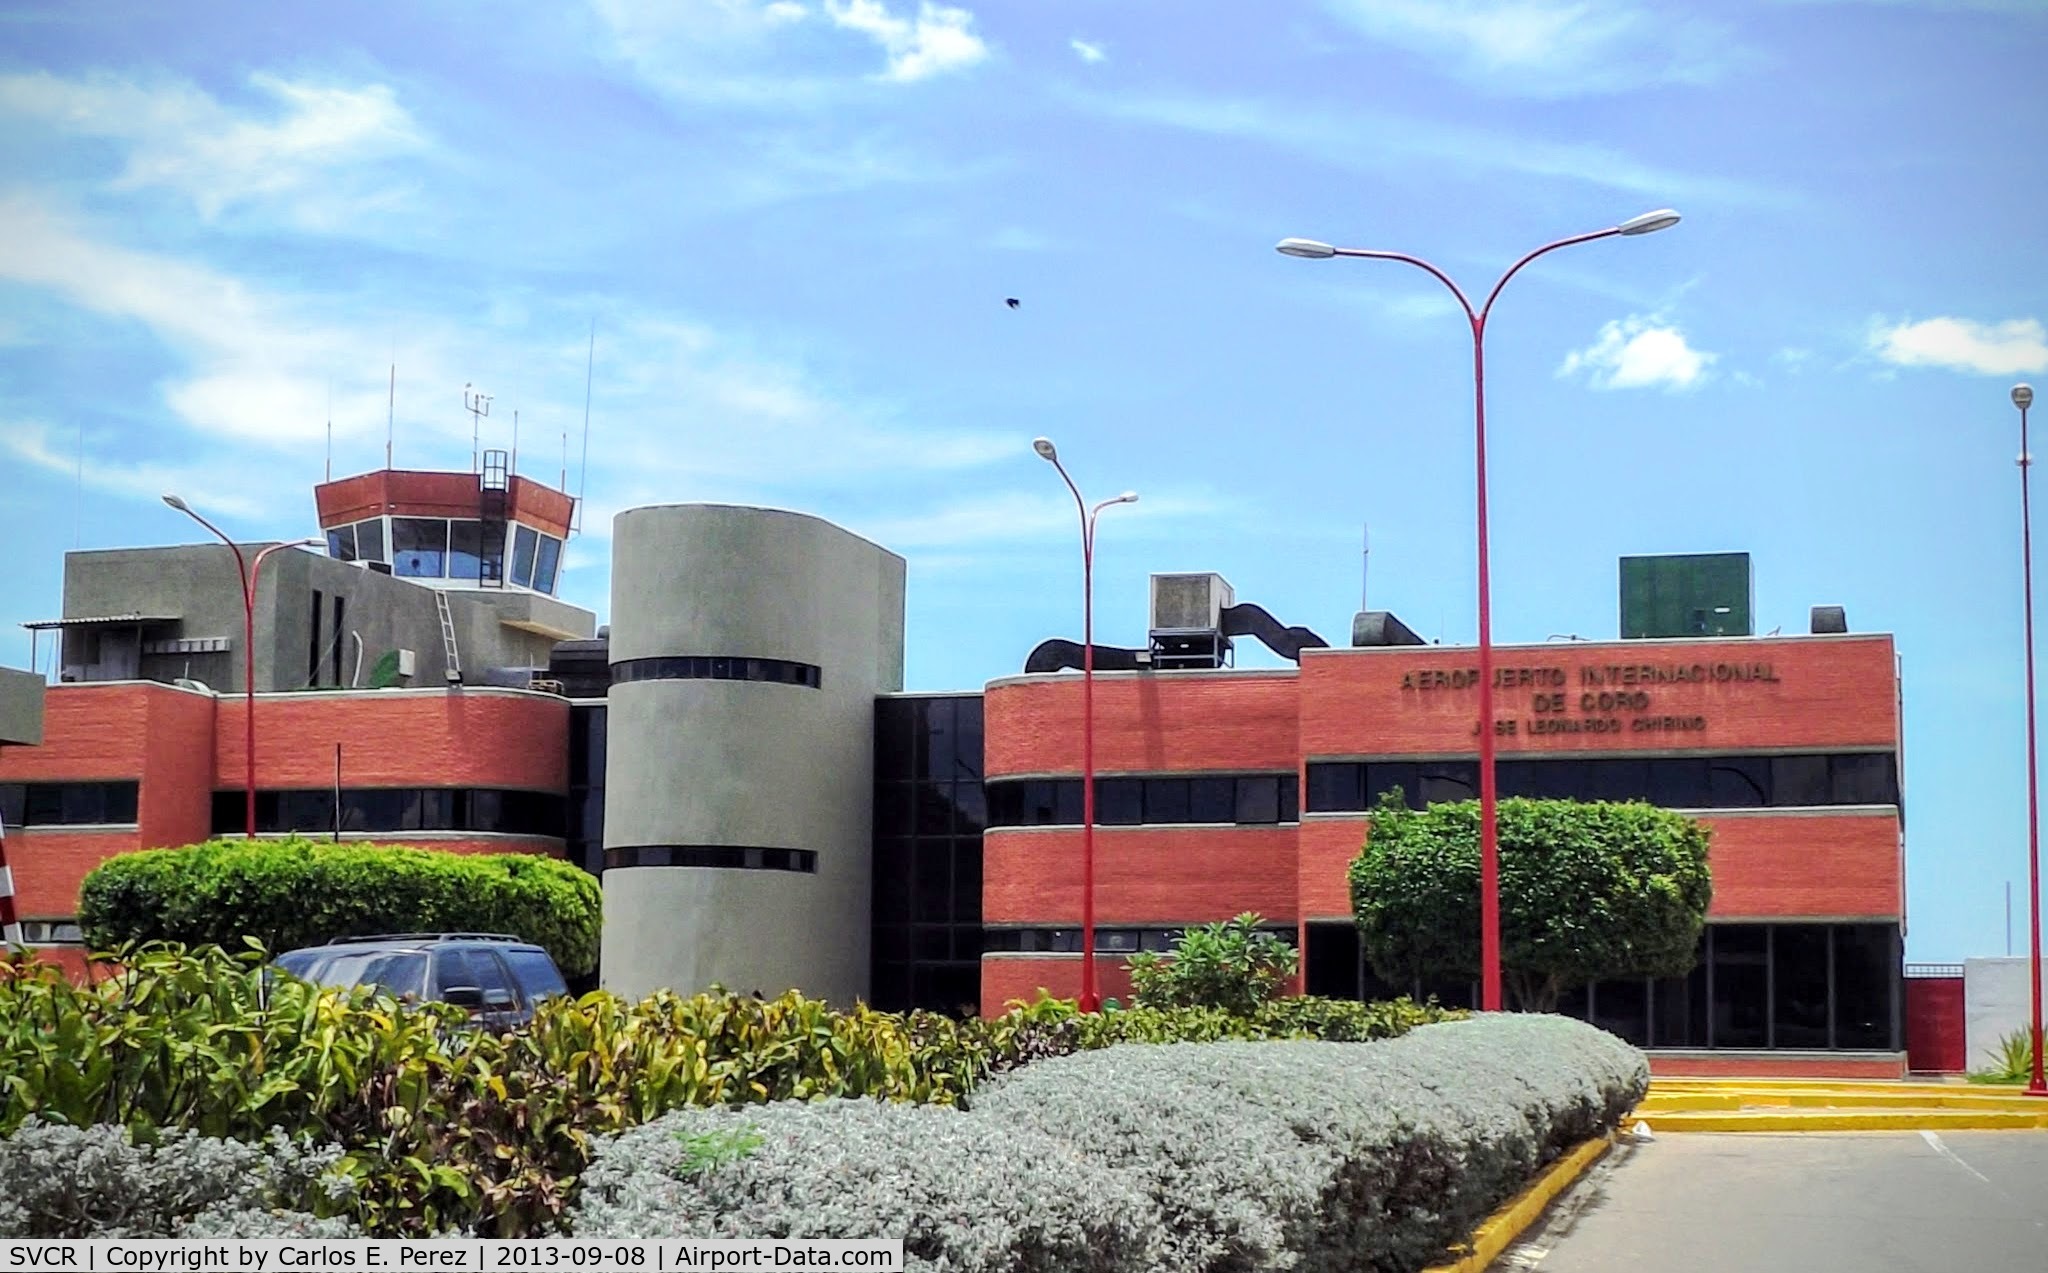 José Leonardo Chirinos Airport, Coro, Falcón Venezuela (SVCR) - Vista general de la fachada del aeropuerto